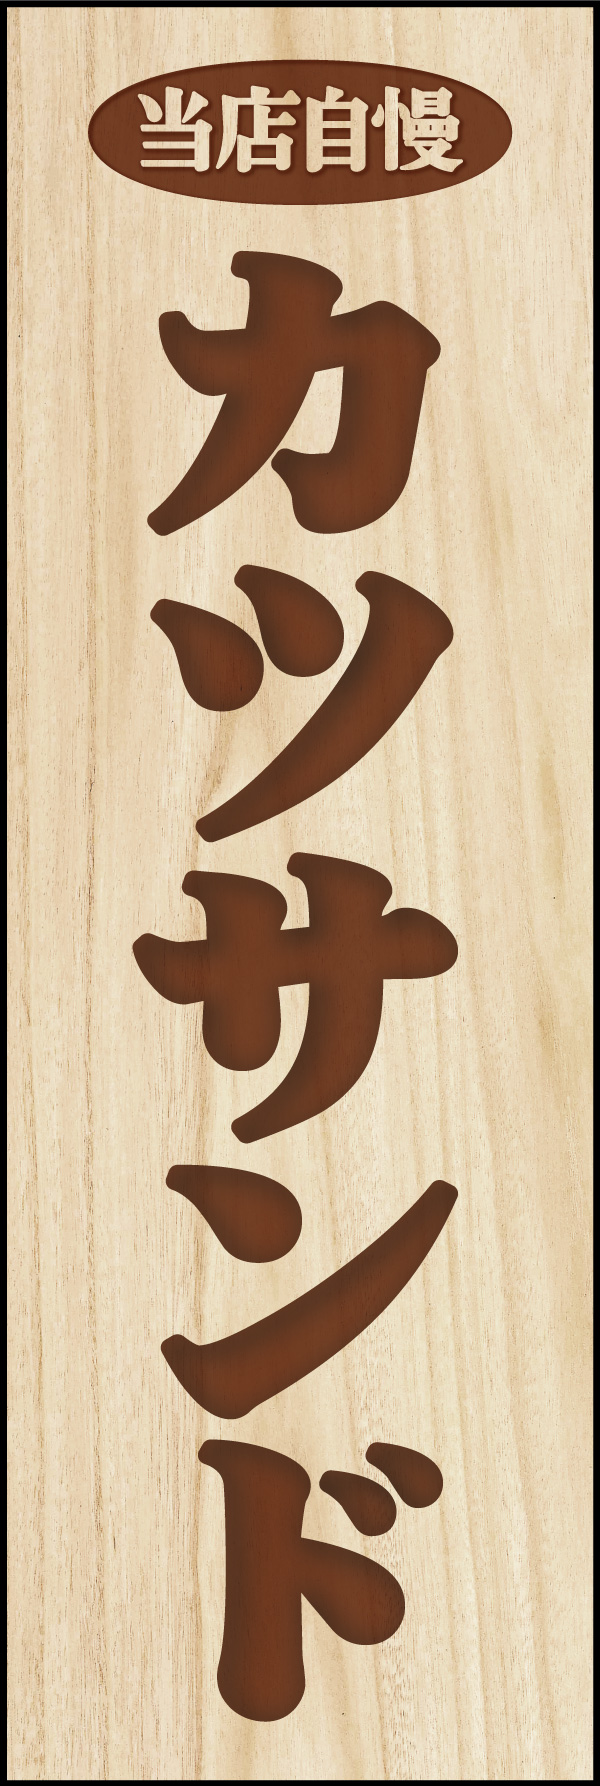 カツサンド 03 「カツサンド」の幟です。木彫りの札をイメージしたデザインにしました。(Y.M)